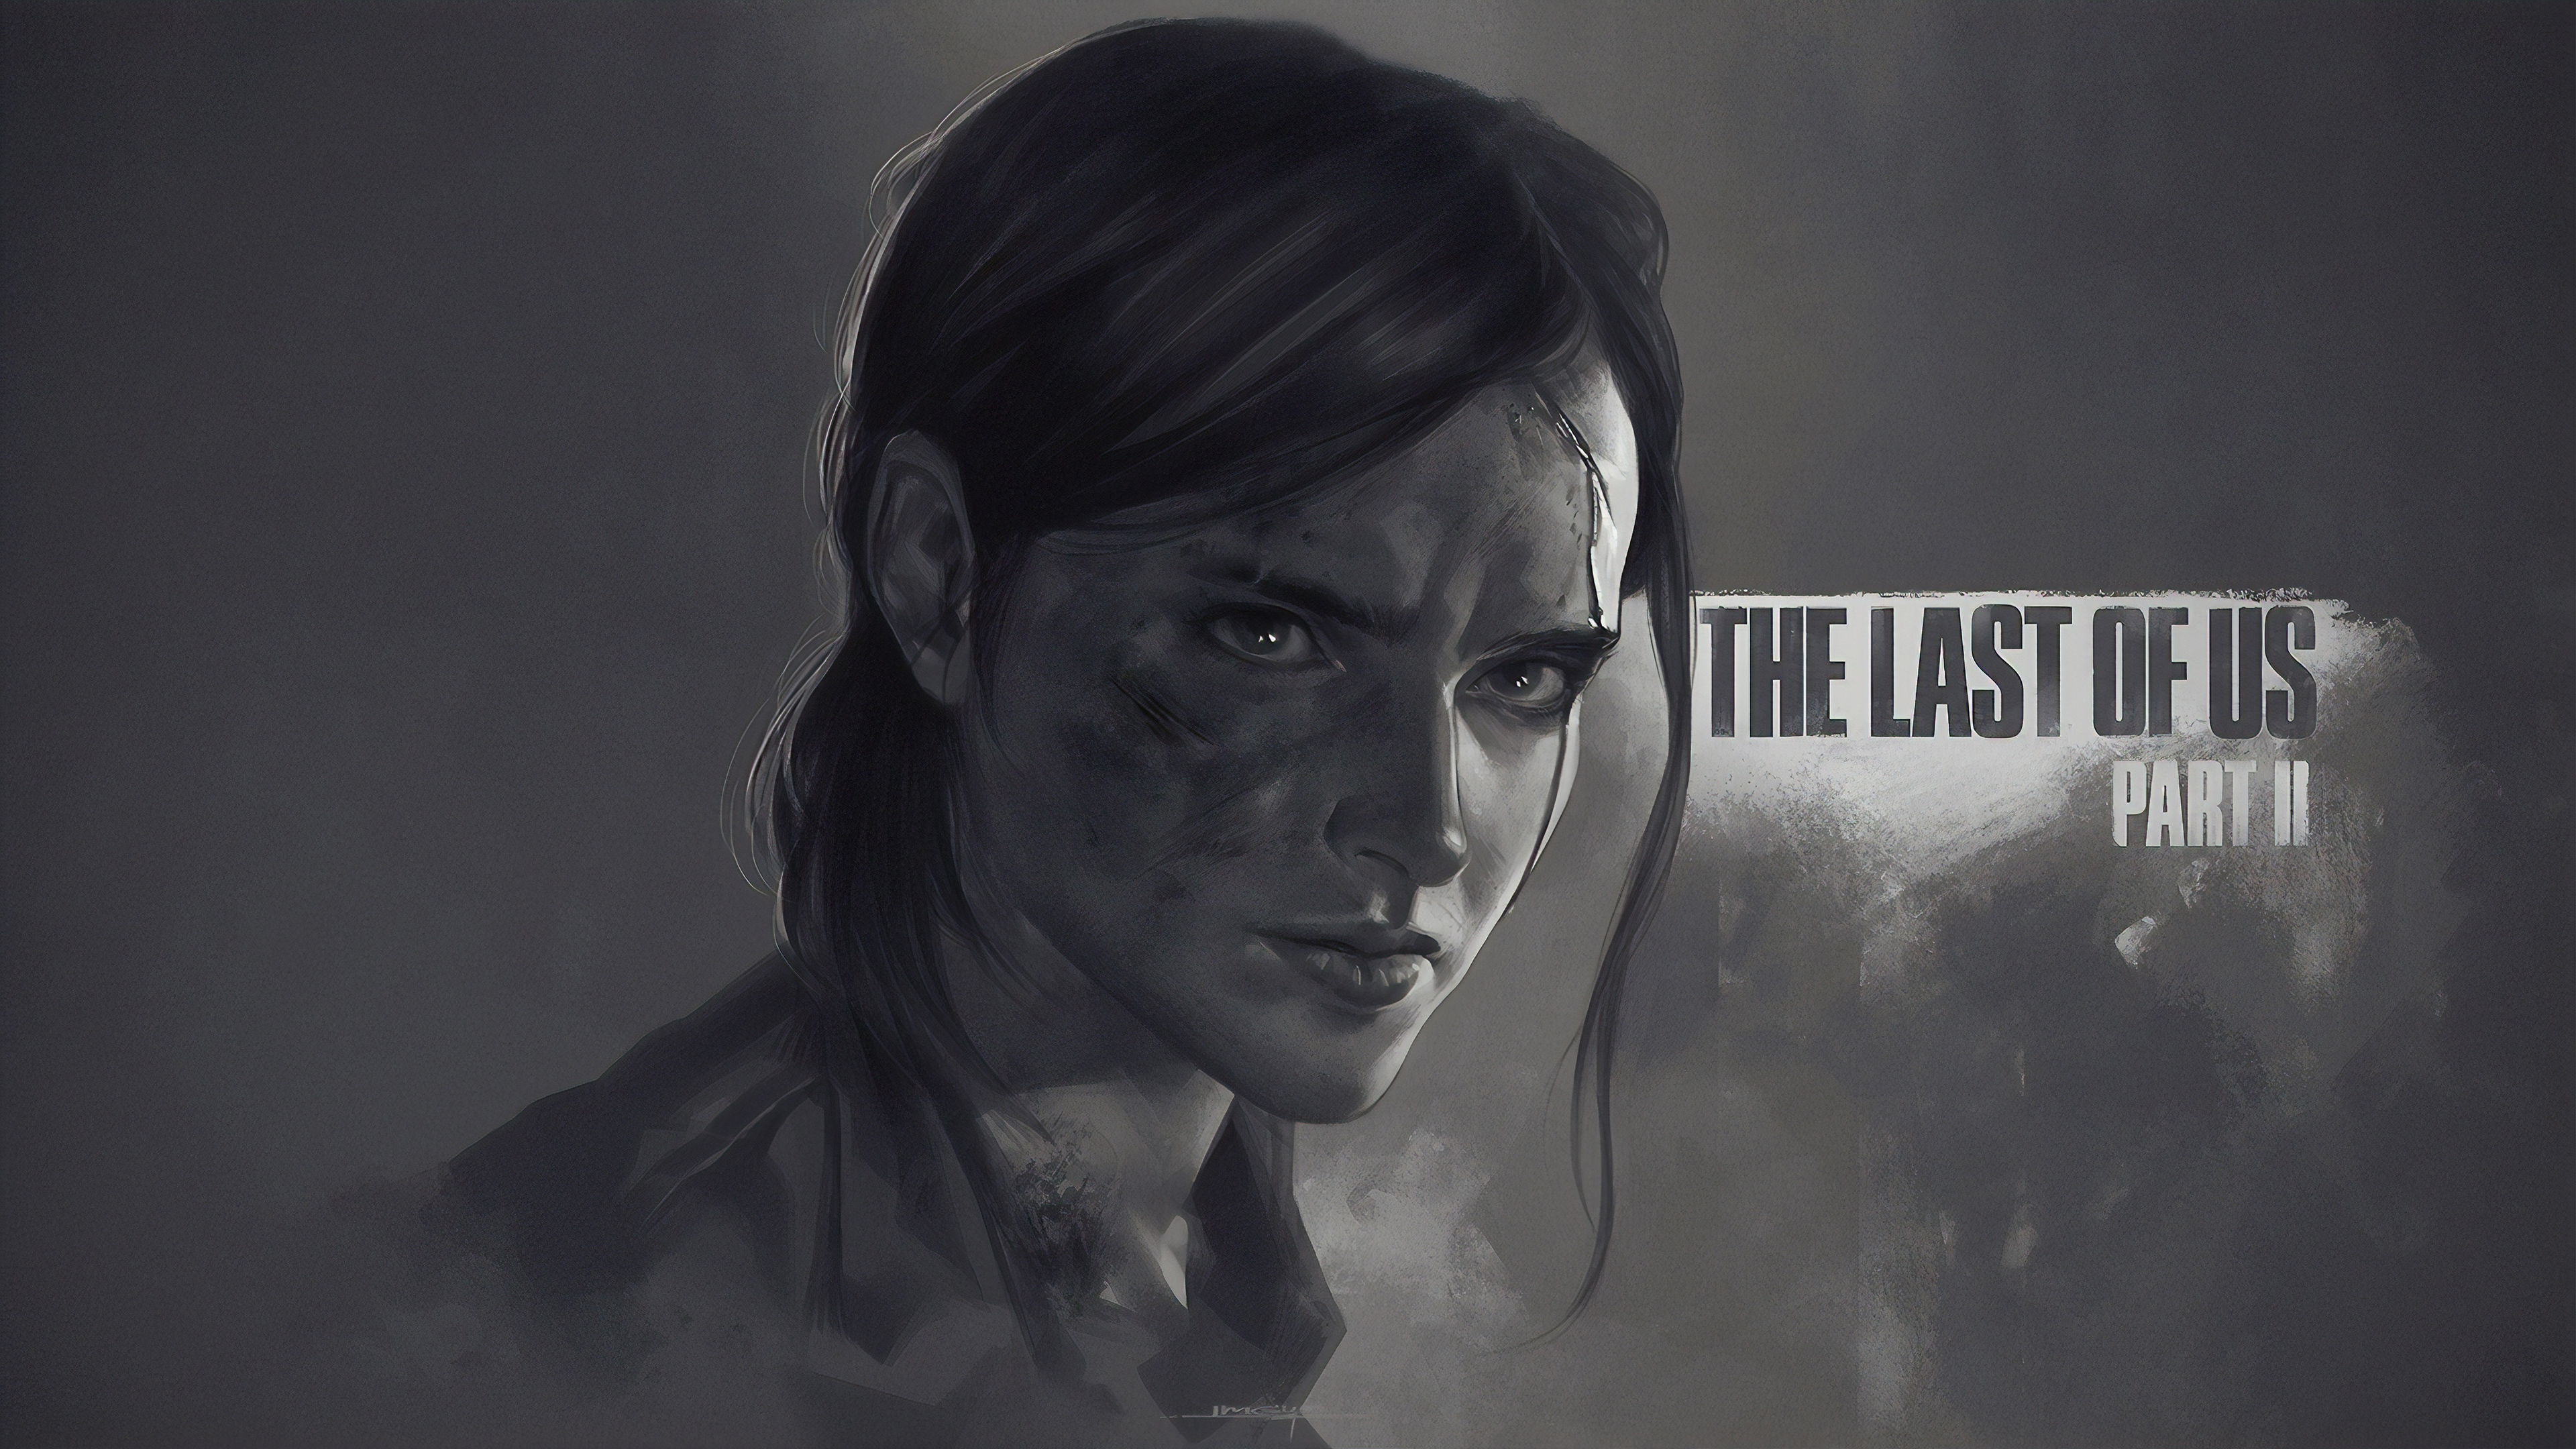 3840x2160 Ellie The Last Of Us Part 2 Monochrome Poster 4k ...